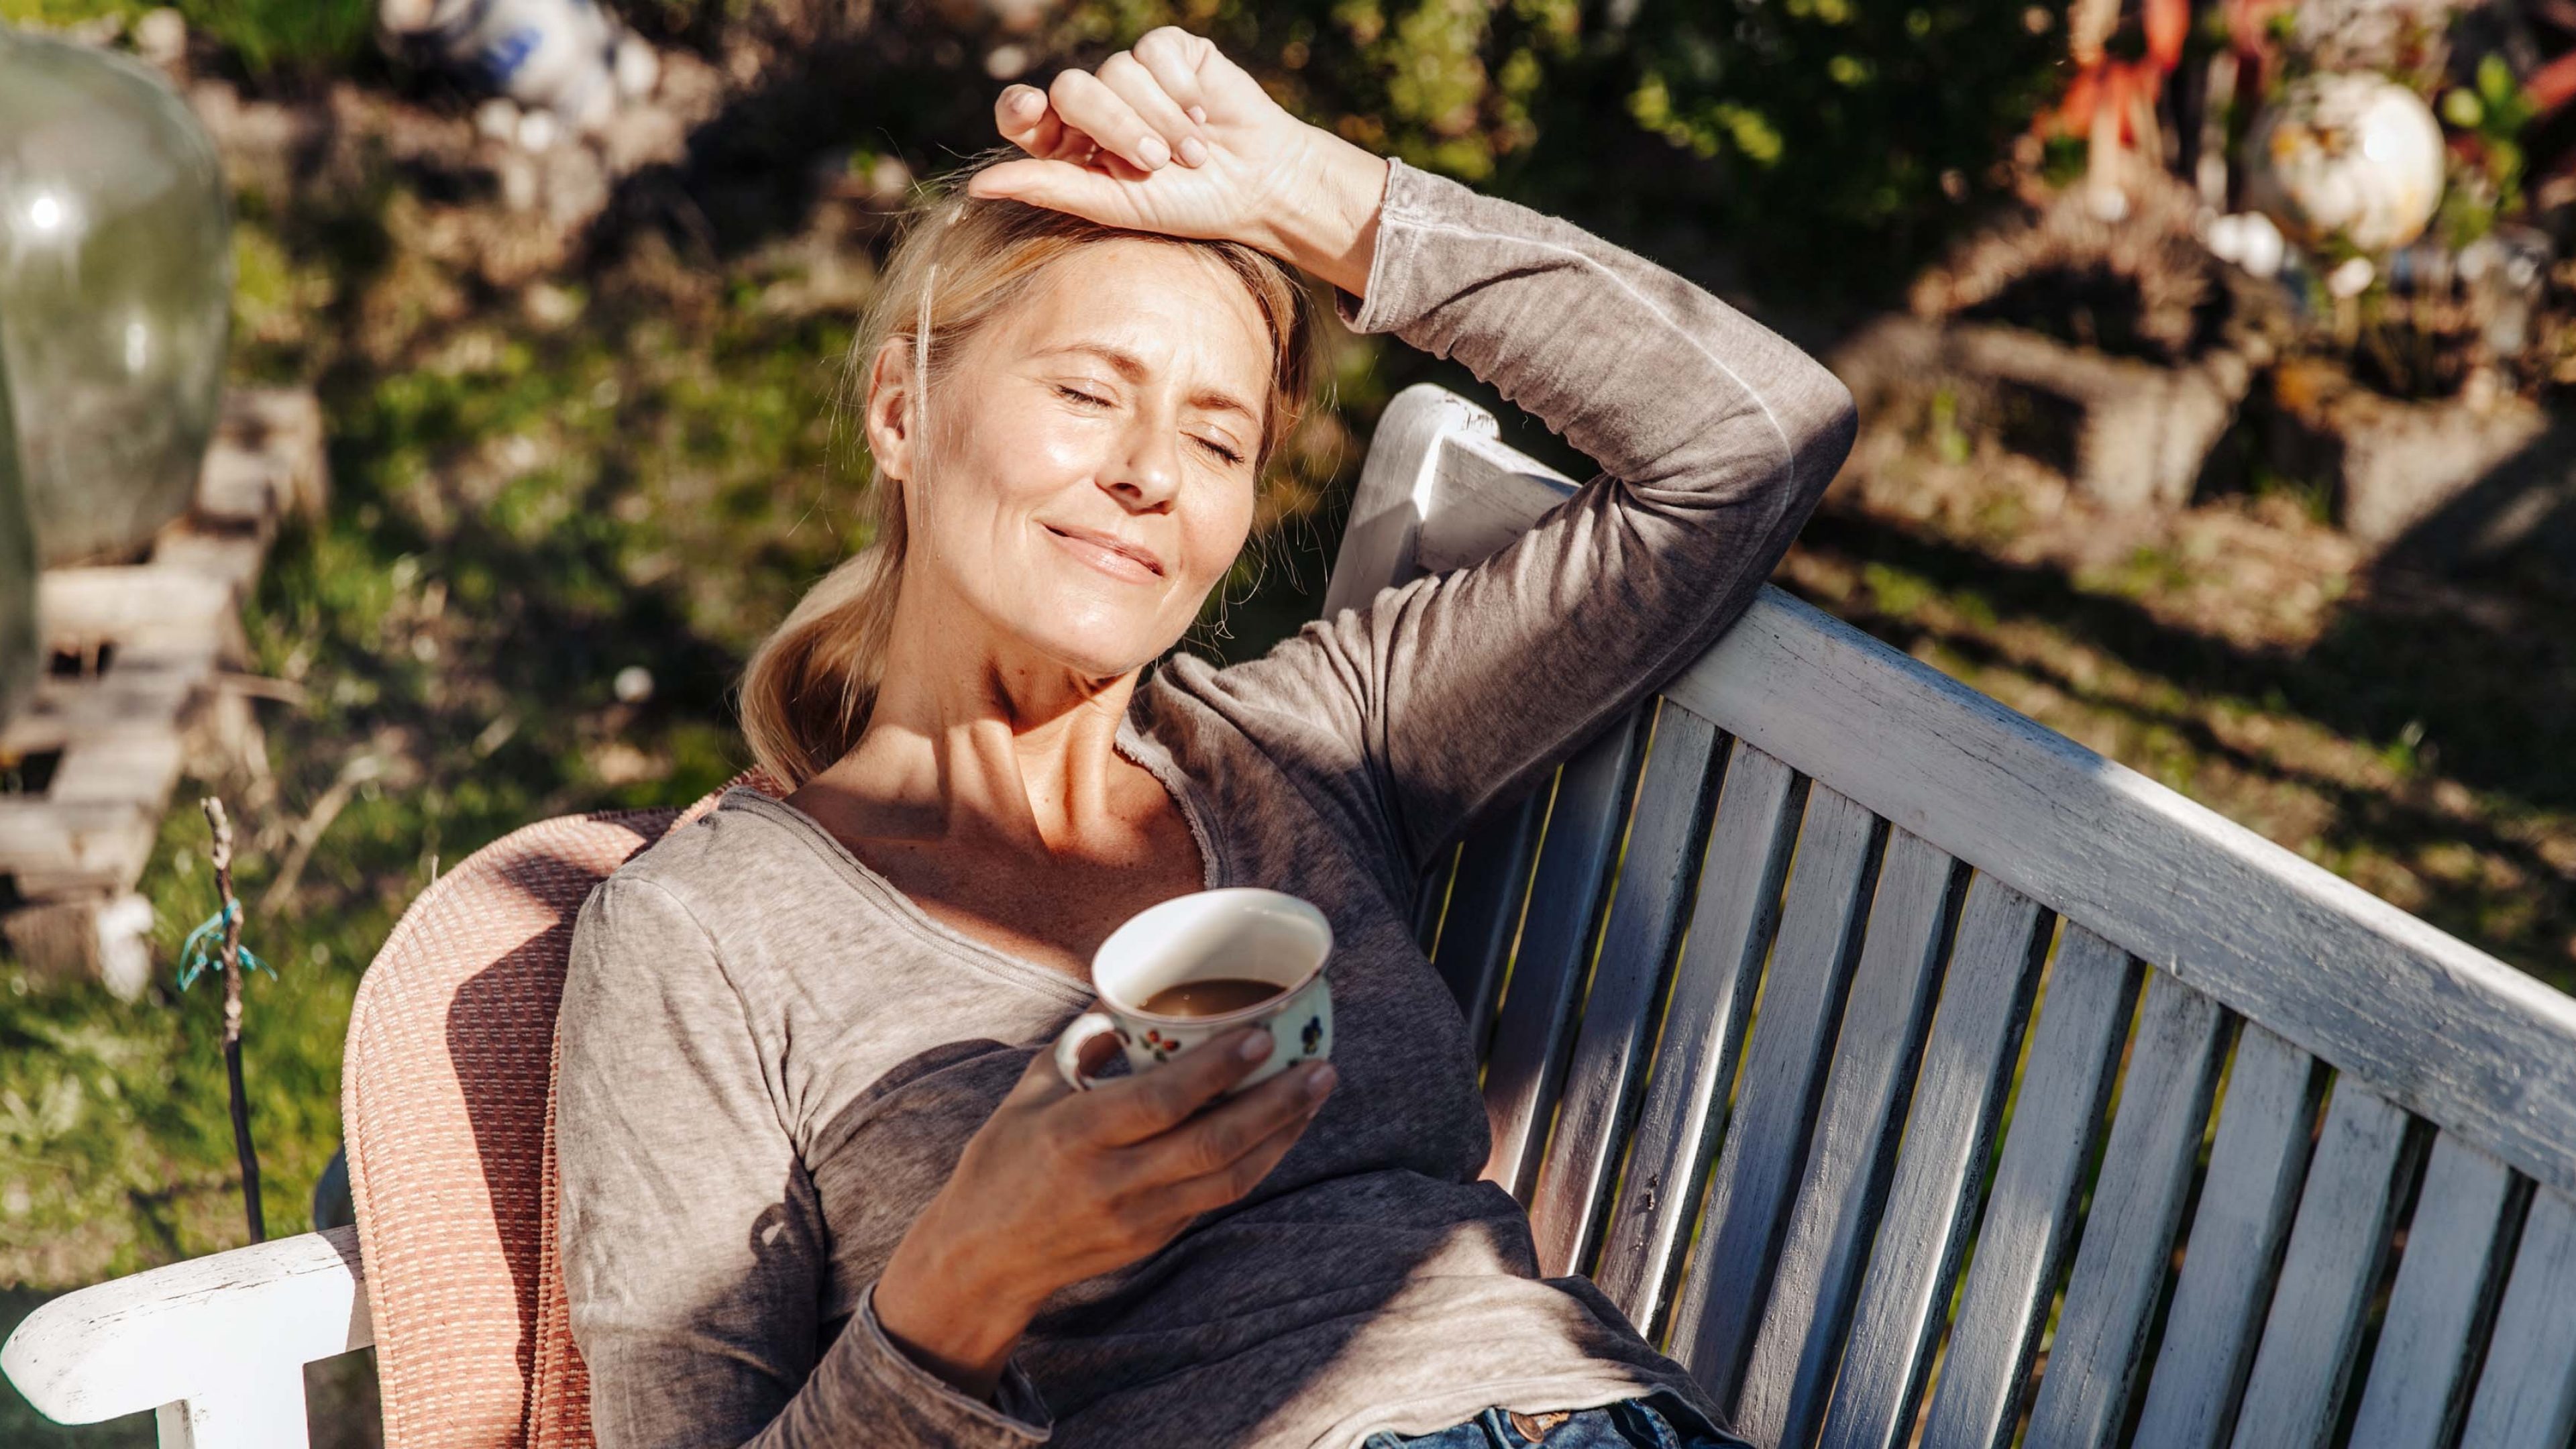 Frau sitzt auf einer Bank mit einem Kaffee in der Hand und denk über eine Frühpensionierung nach